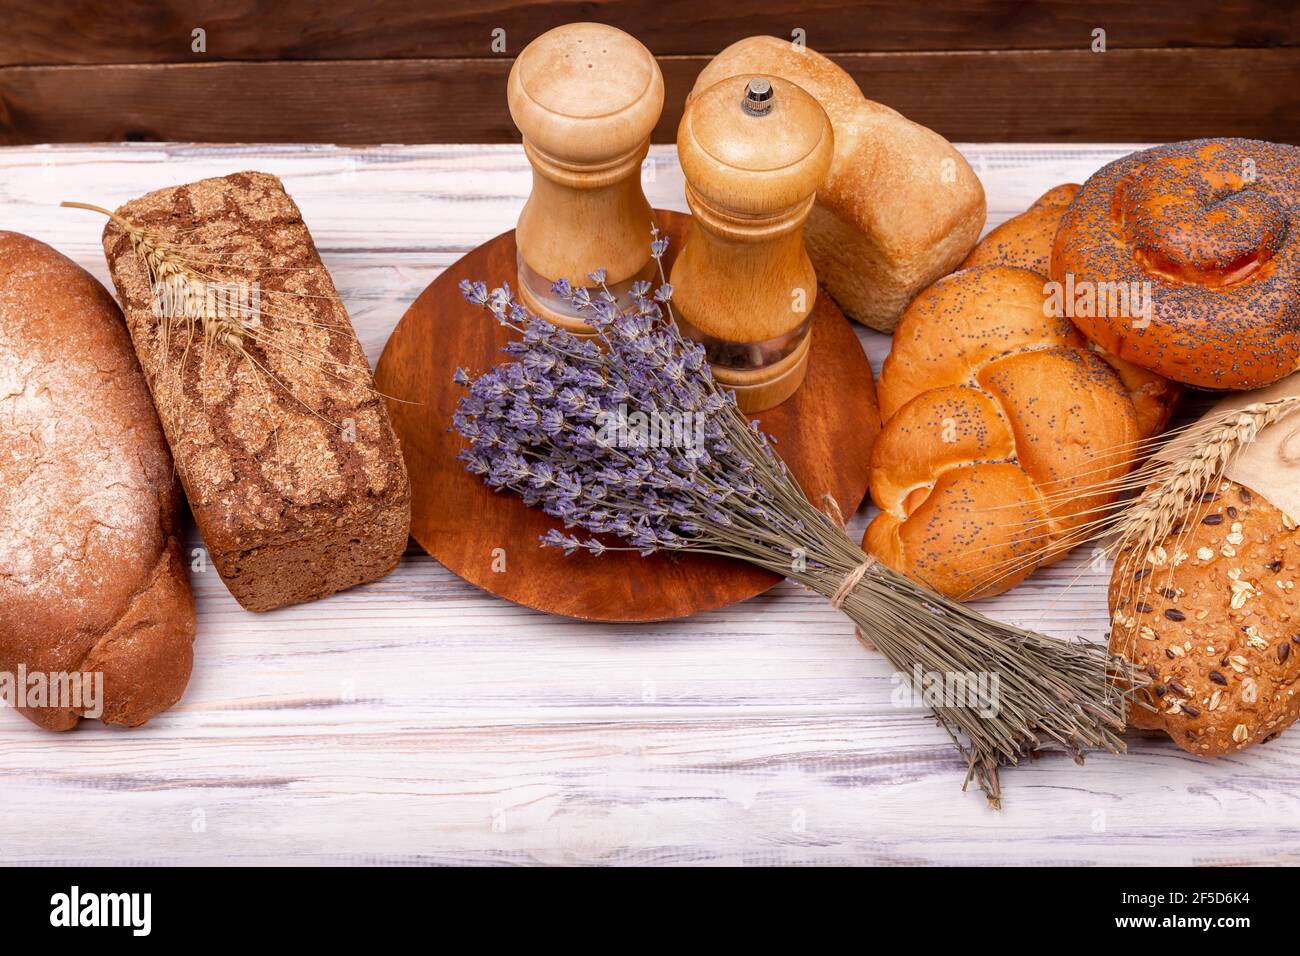 Pane italiano fresco fatto in casa. Colazione rurale con pane fresco Foto  stock - Alamy